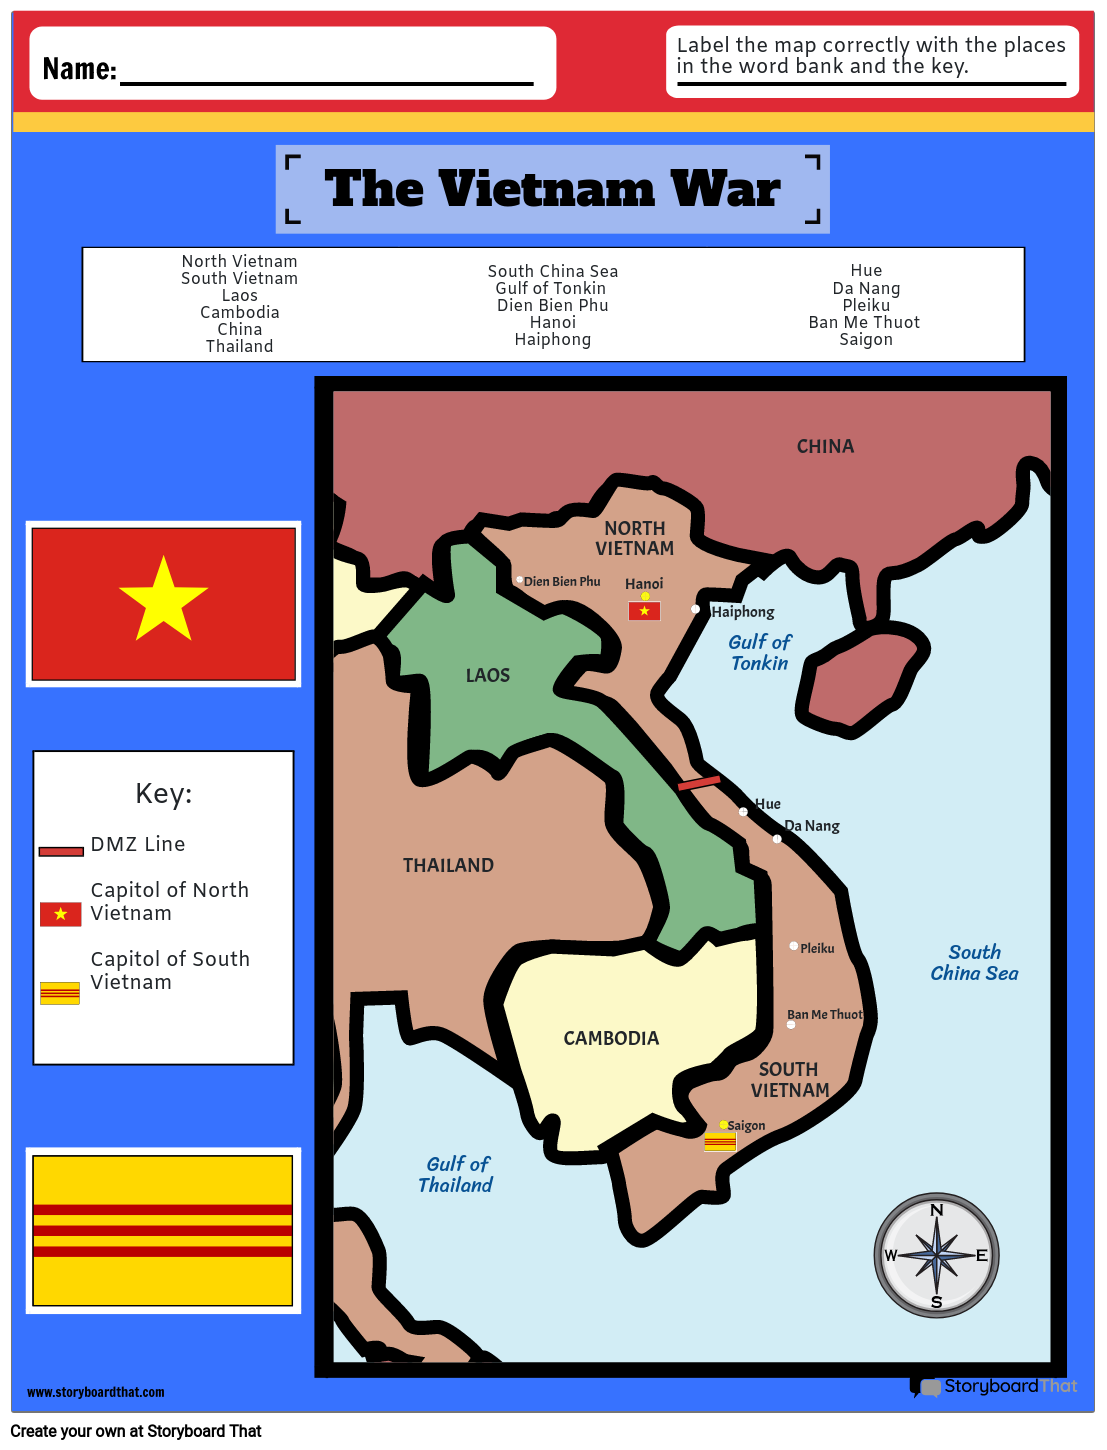 Die Karte des Vietnamkriegs